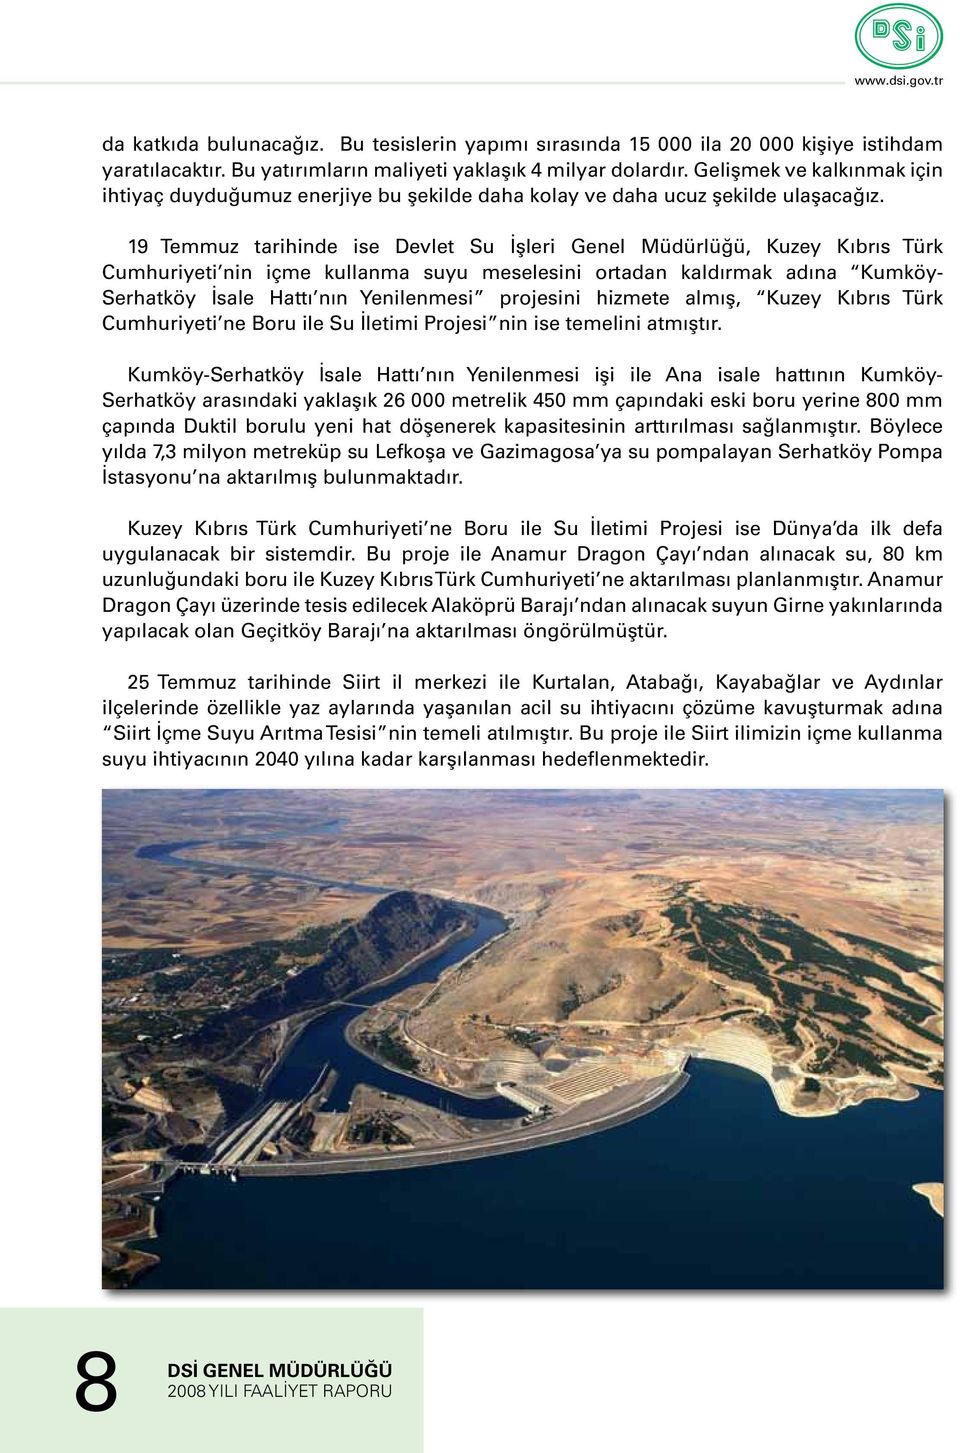 19 Temmuz tarihinde ise Devlet Su İşleri Genel Müdürlüğü, Kuzey Kıbrıs Türk Cumhuriyeti nin içme kullanma suyu meselesini ortadan kaldırmak adına Kumköy- Serhatköy İsale Hattı nın Yenilenmesi